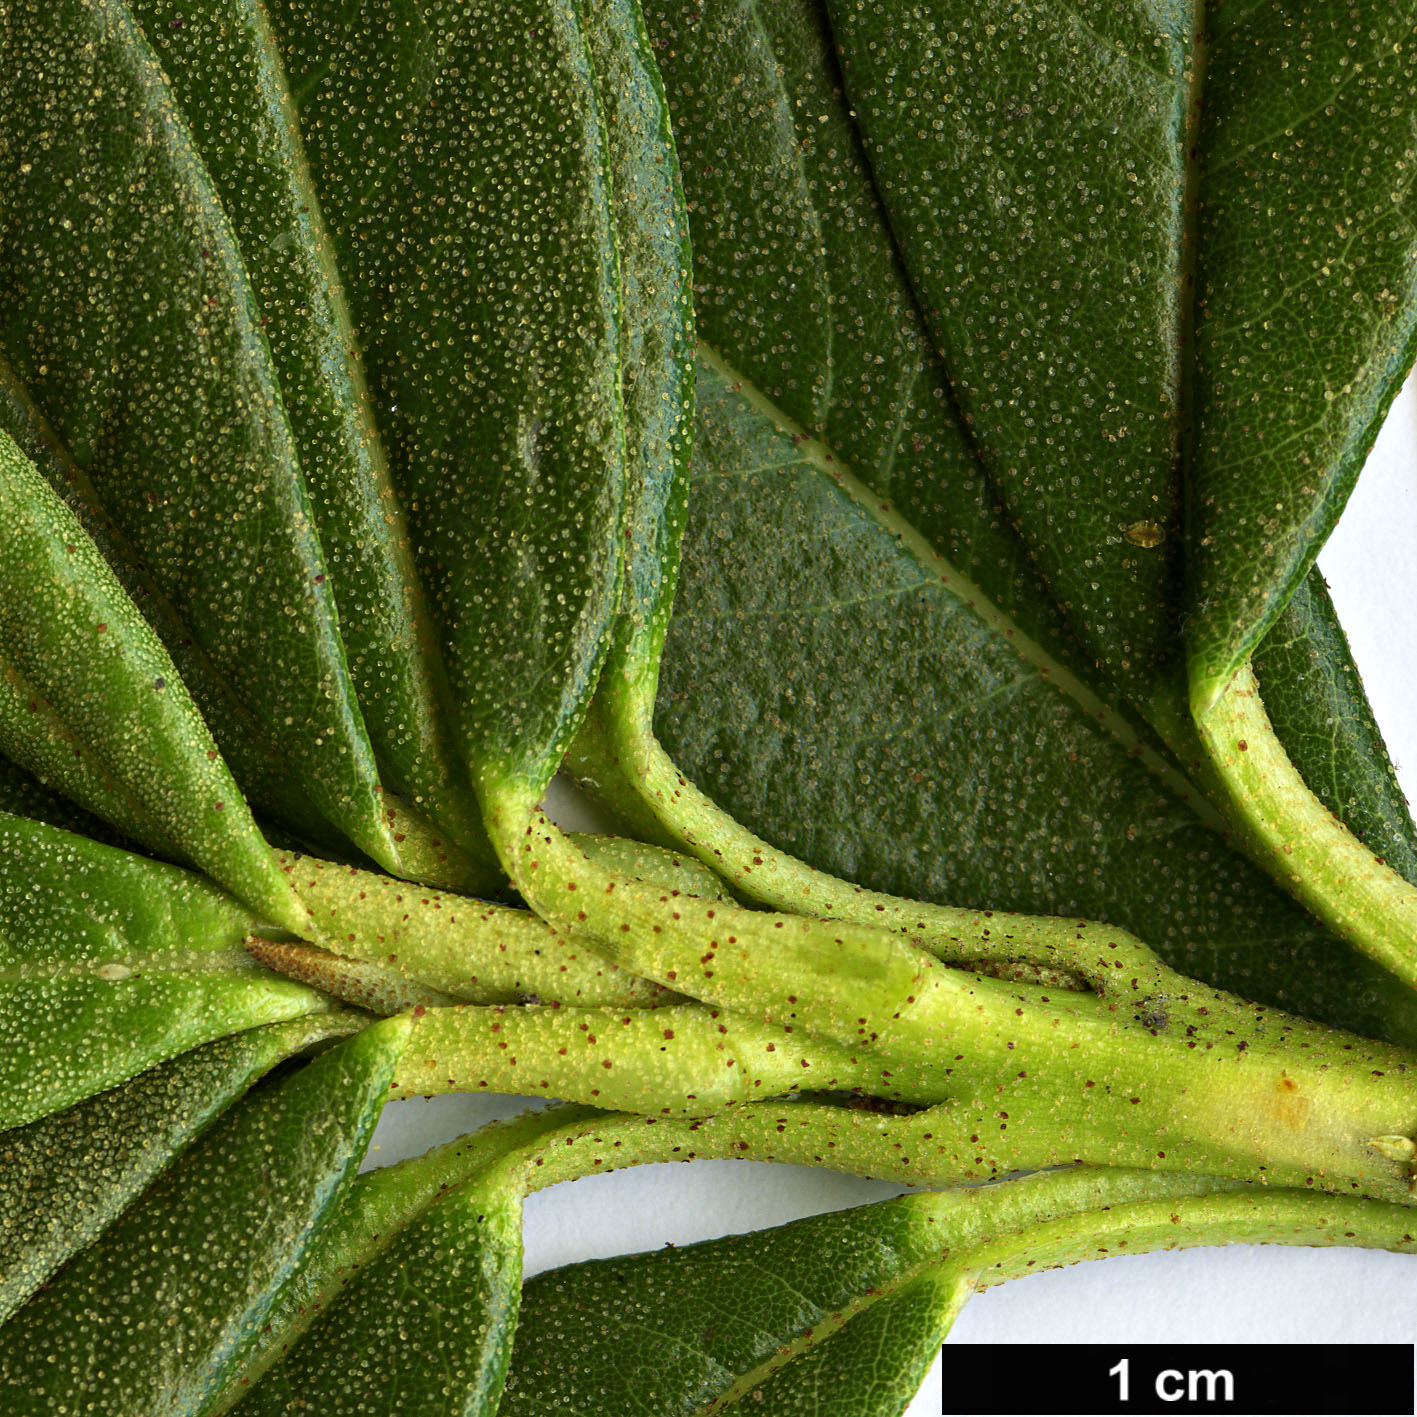 High resolution image: Family: Ericaceae - Genus: Rhododendron - Taxon: brachyanthum - SpeciesSub: subsp. hypolepidotum